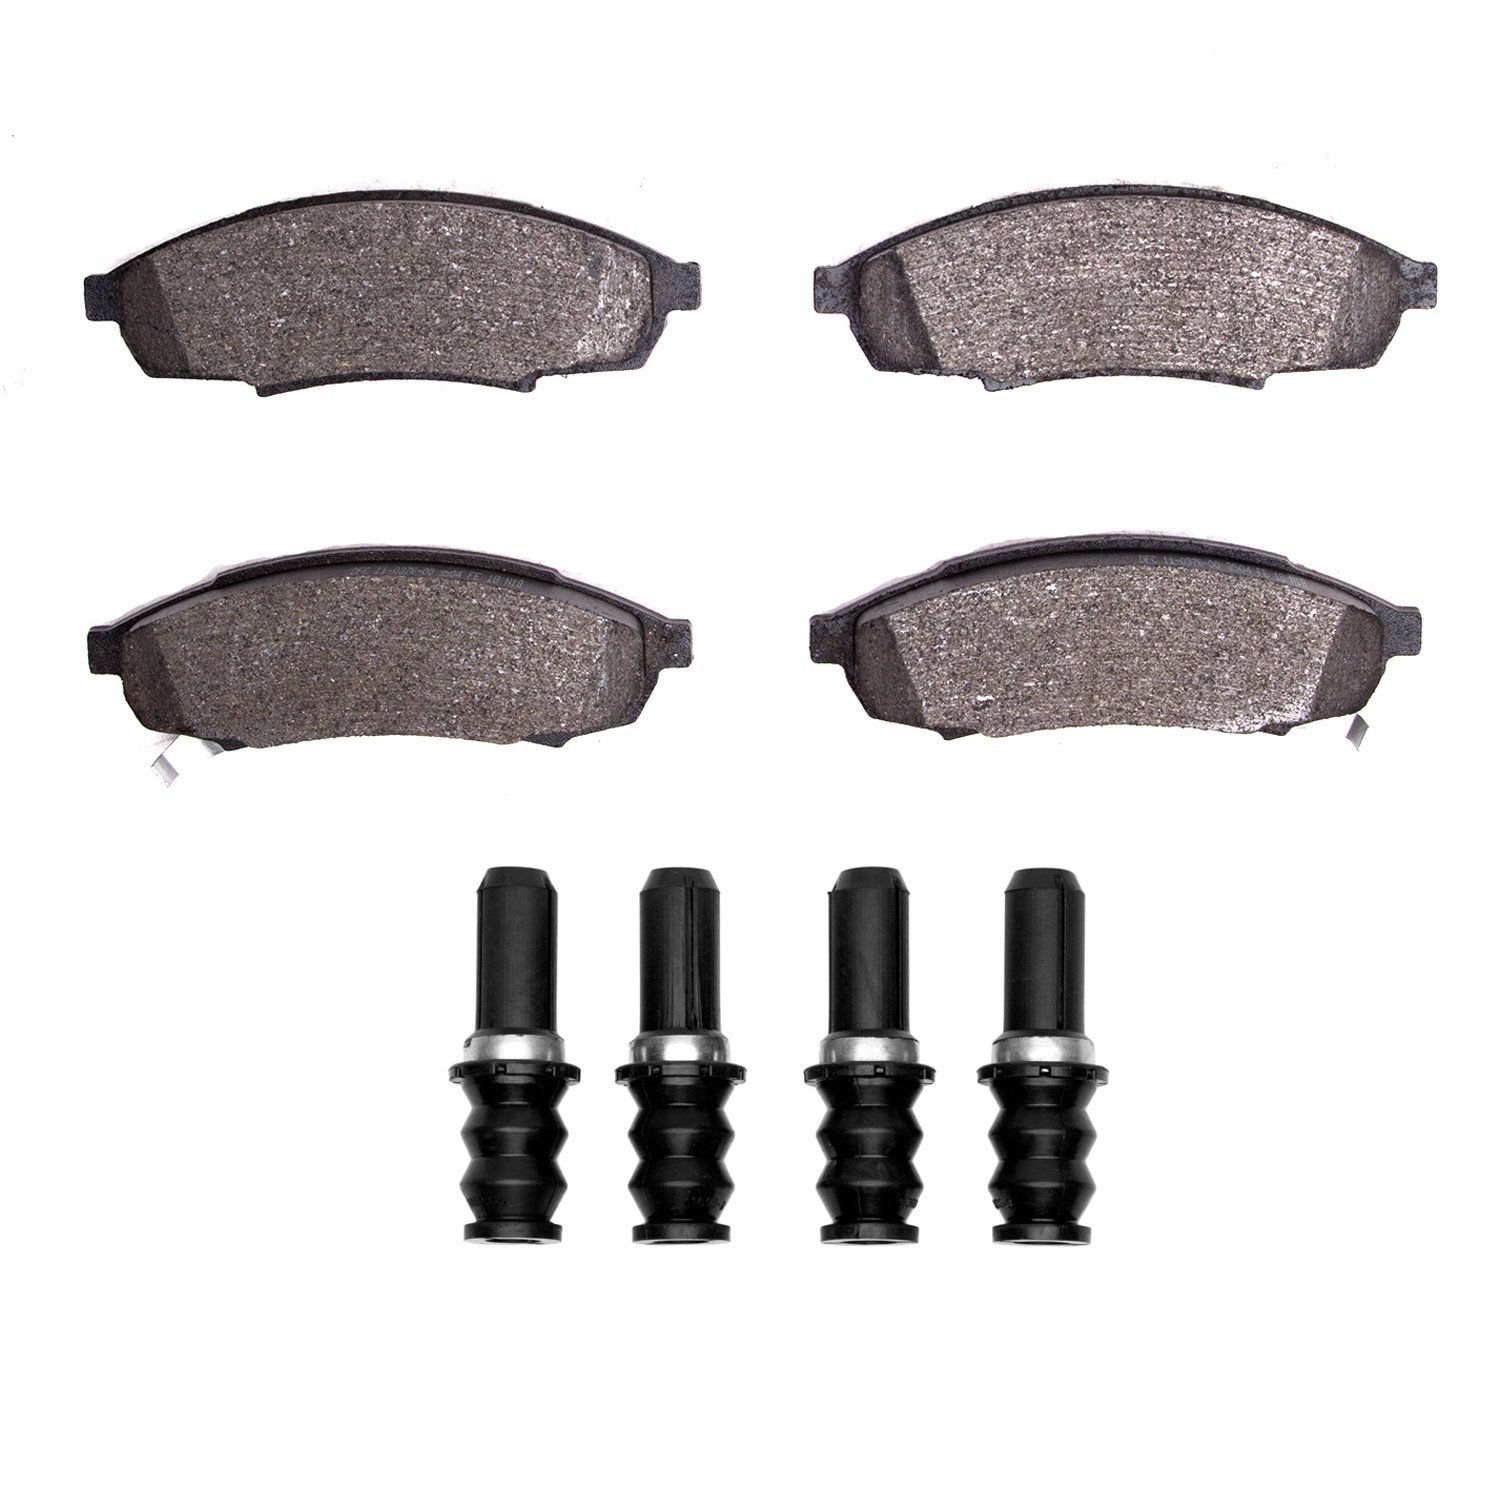 1310-0376-01 3000-Series Ceramic Brake Pads & Hardware Kit, 1988-2001 GM, Position: Front